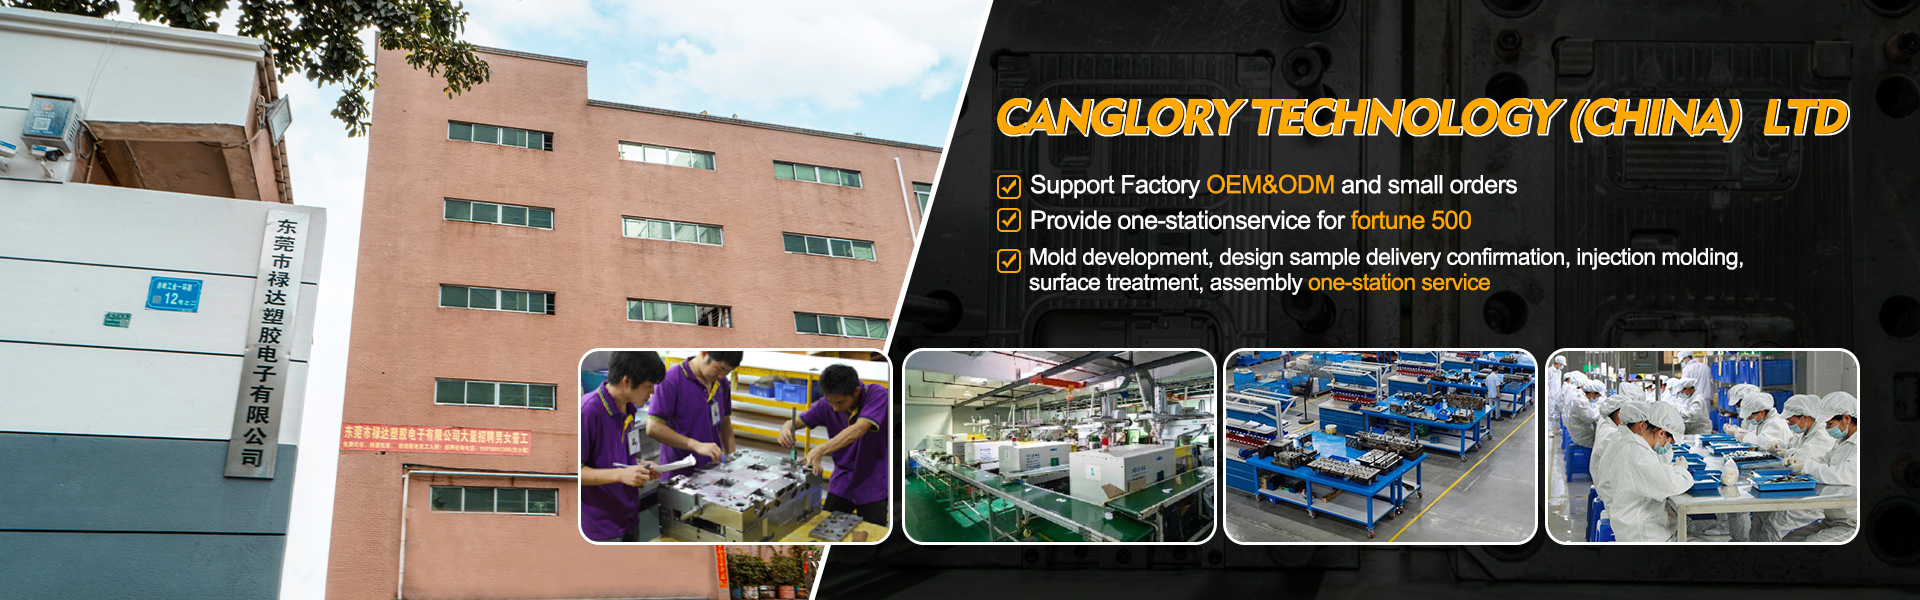 Domov - Lisování, injekce, výrobce originálního vybavení|technologie Canglory Technology (China) Ltd